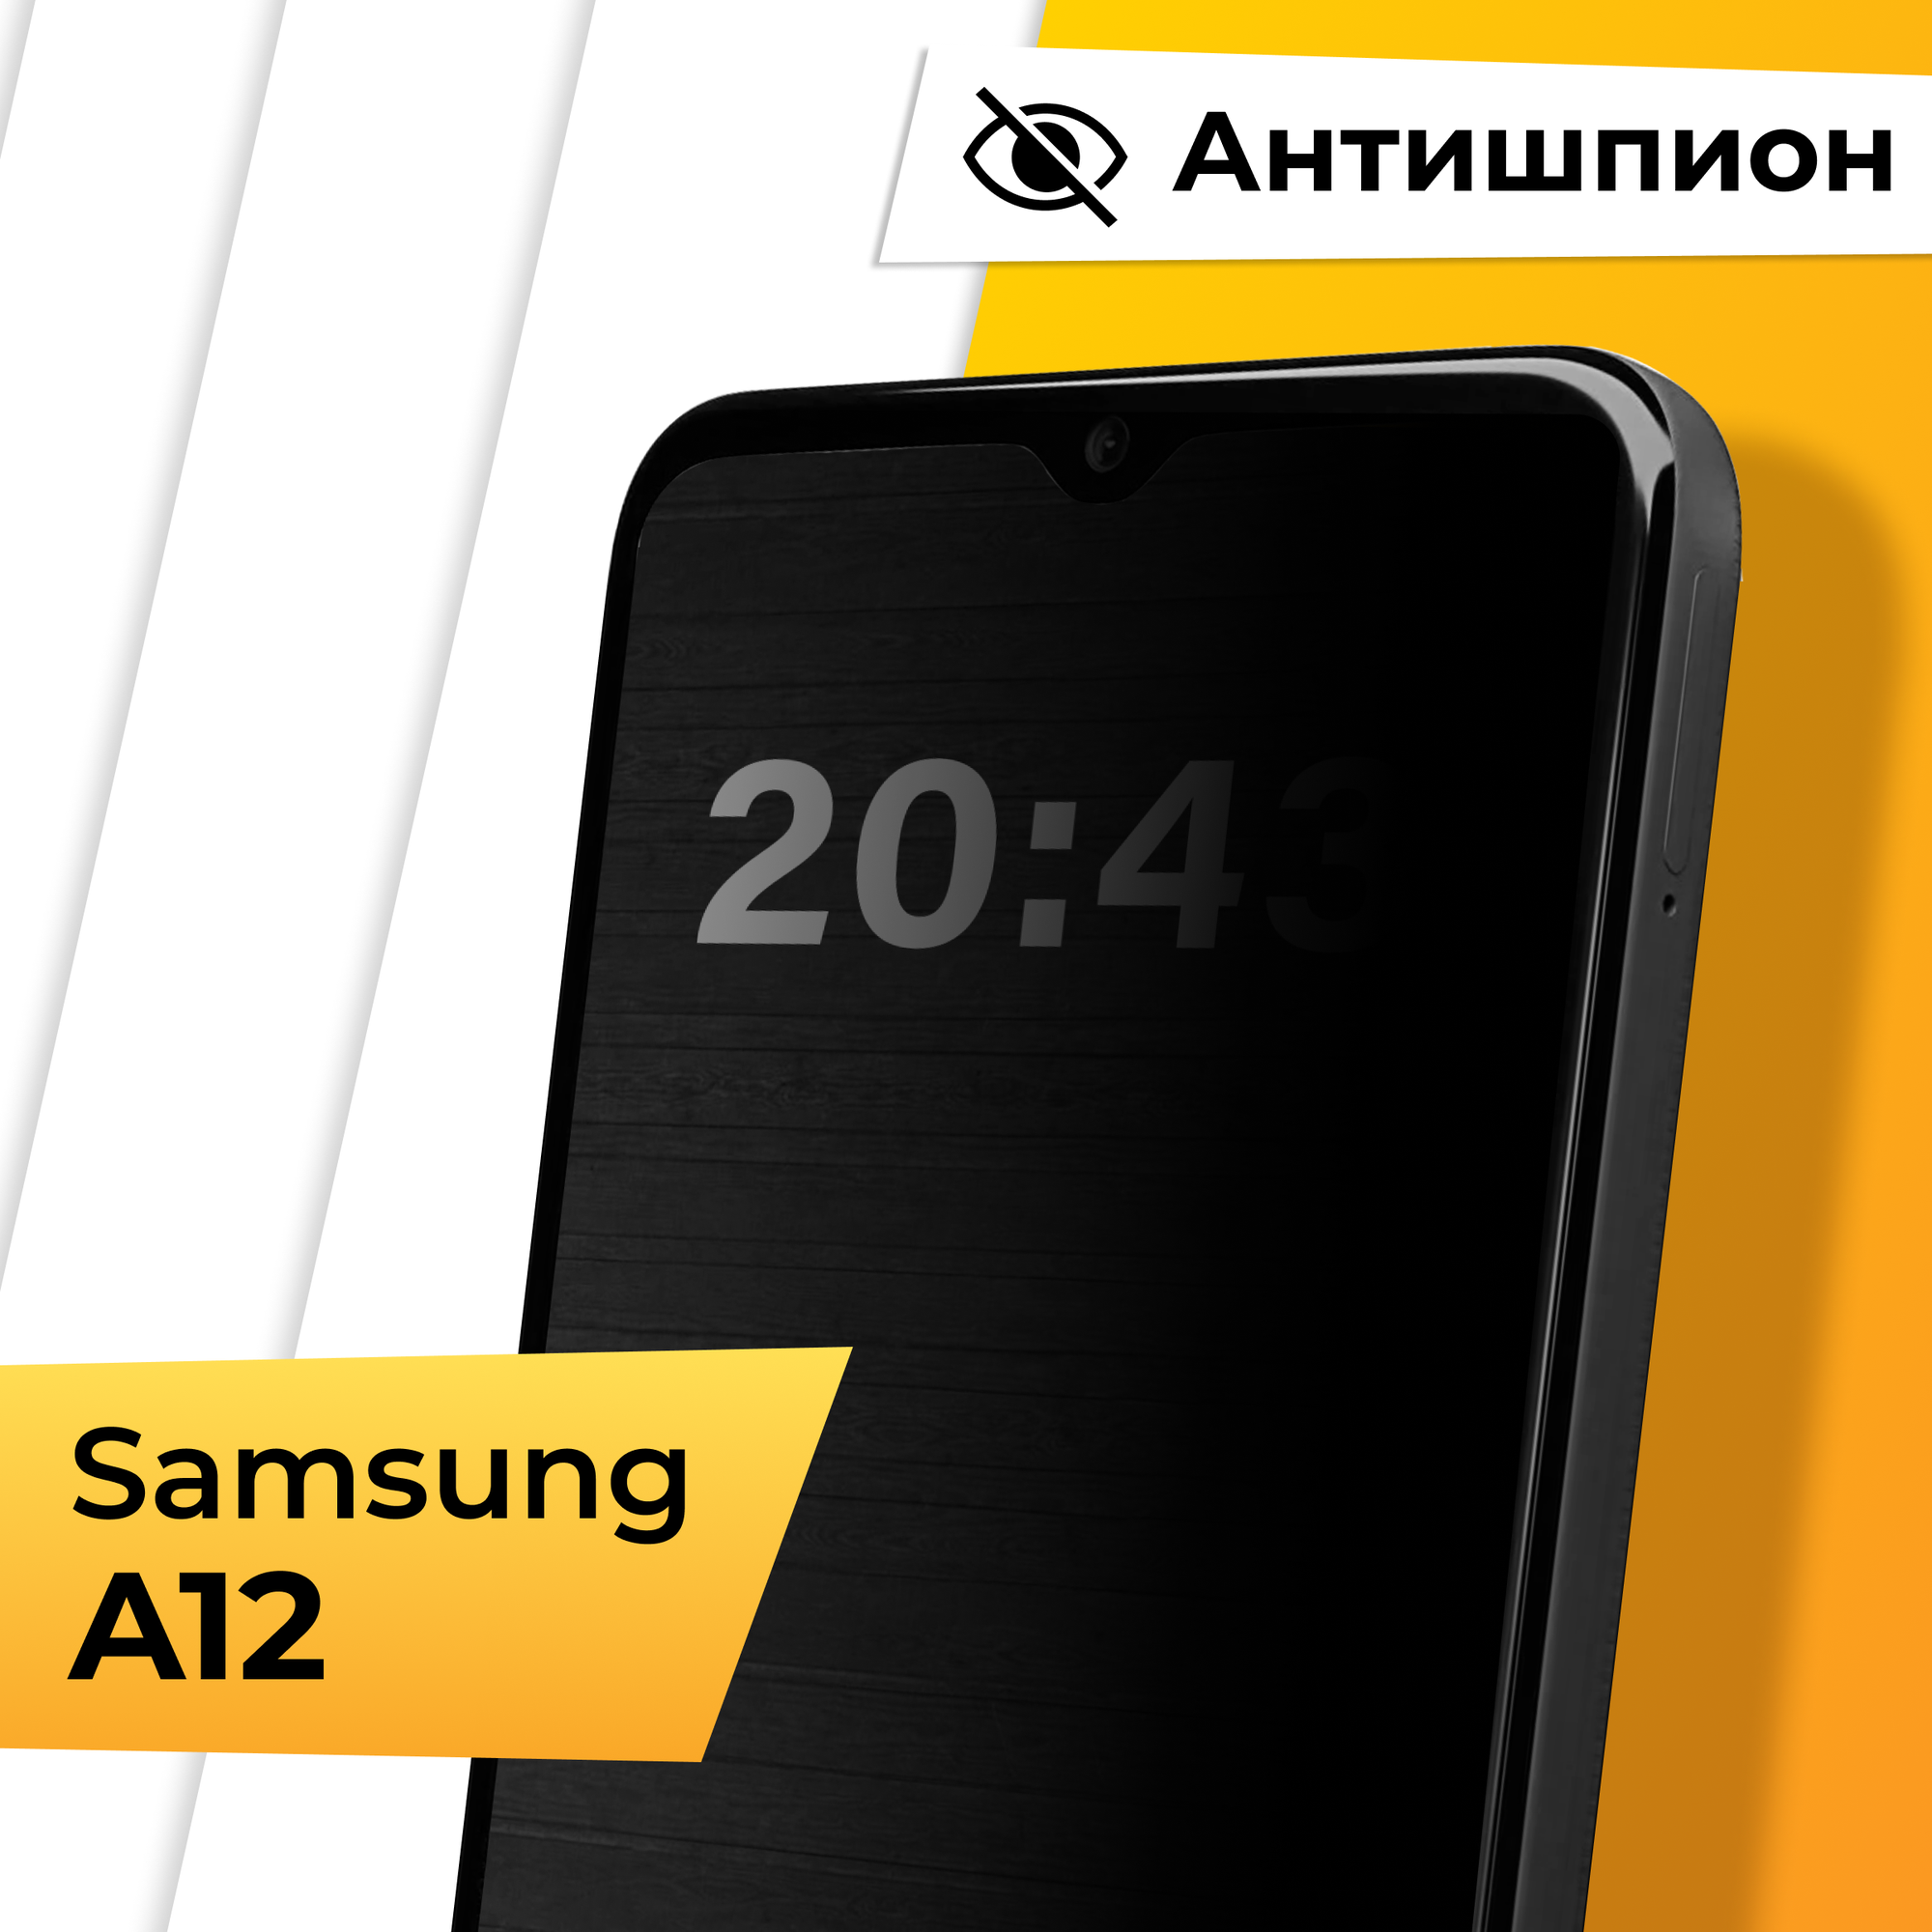 Противоударное защитное стекло Антишпион для телефона Samsung Galaxy A12 / Закаленное приватное стекло на весь экран для смартфона Самсунг Галакси А12